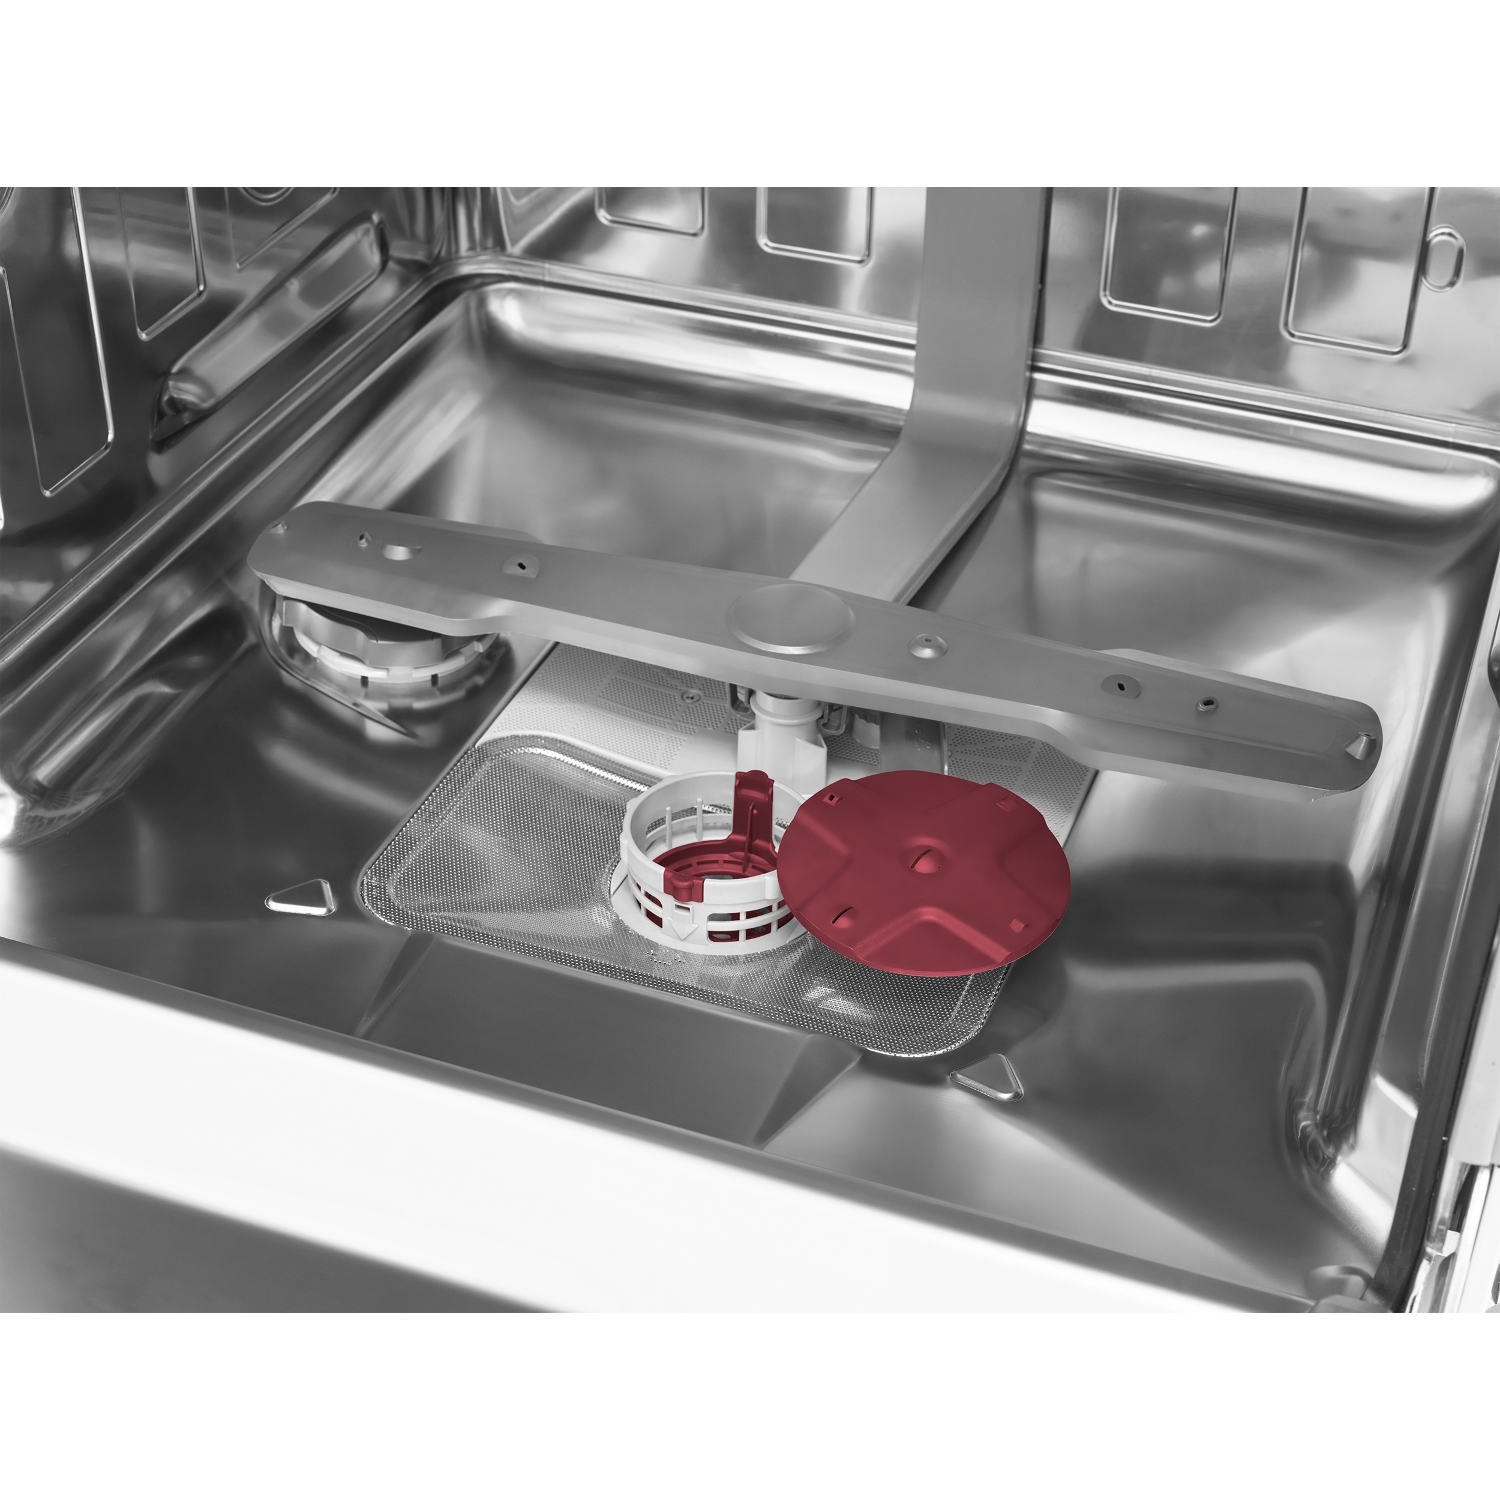 Blomberg LDV42244 Integrated Full Size Dishwasher - 14 Place Settings - 4